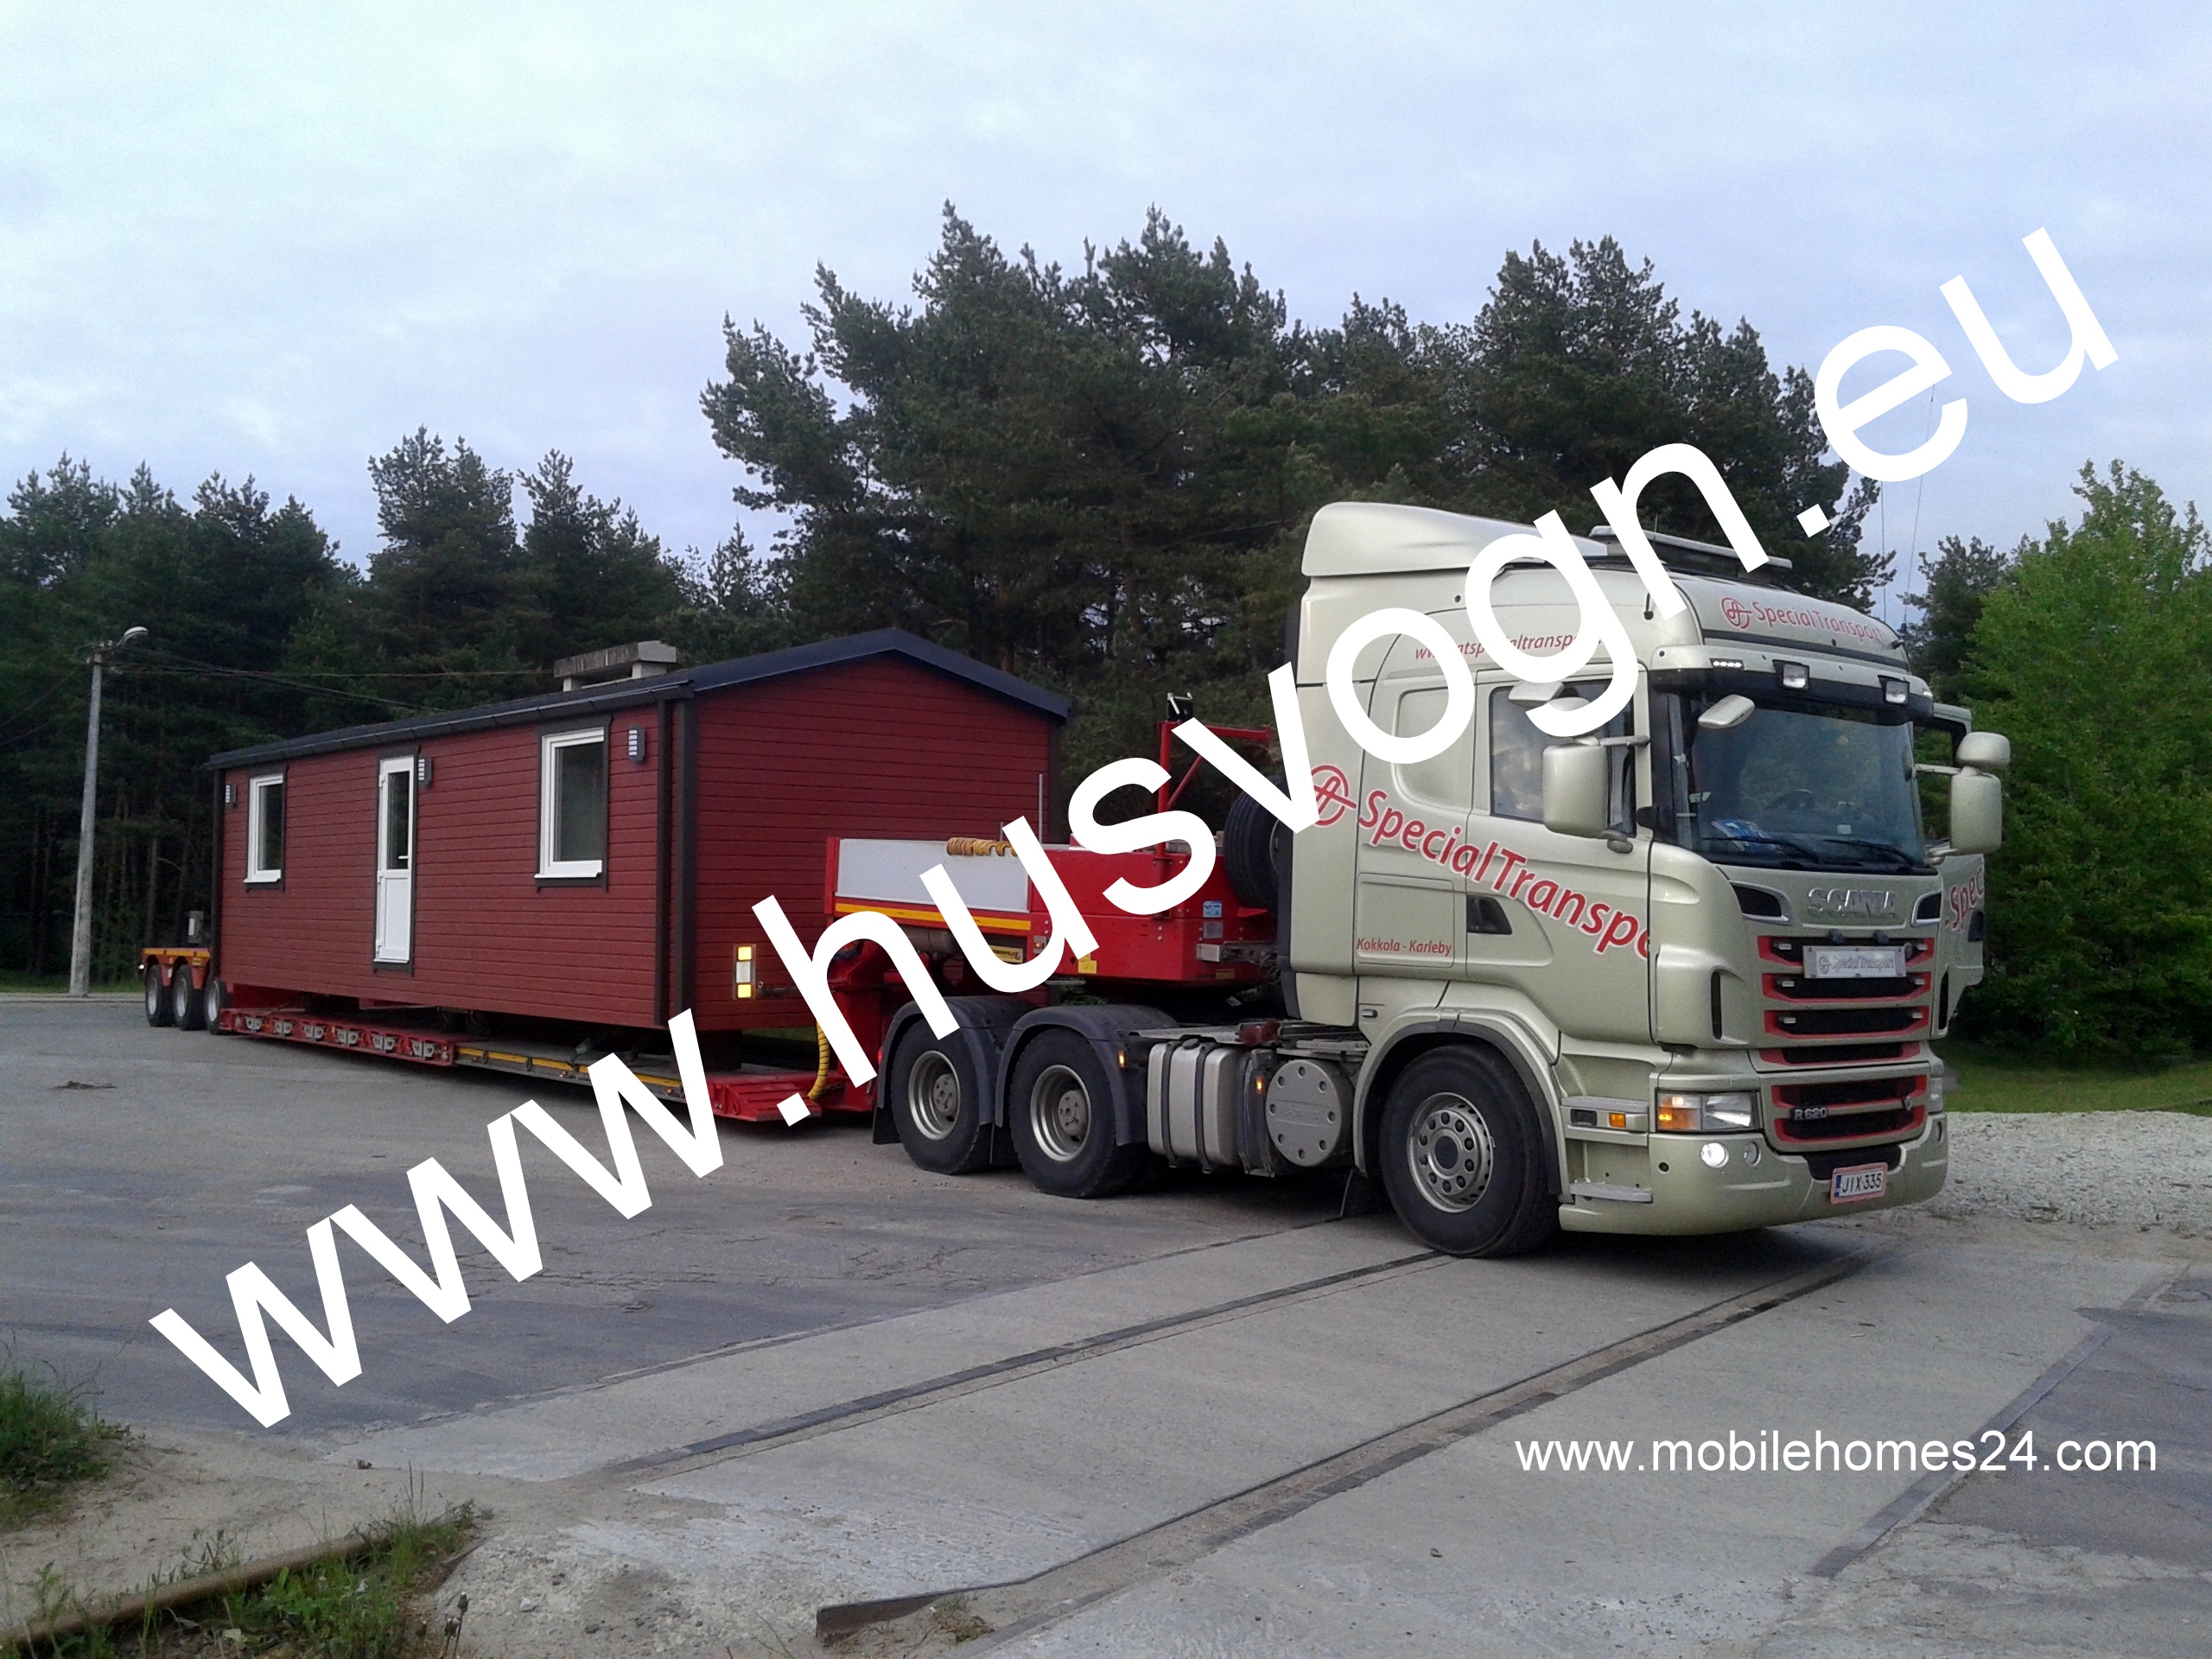 Husvogn, husvogner, husvogner til salgs, Estland mobile homes.